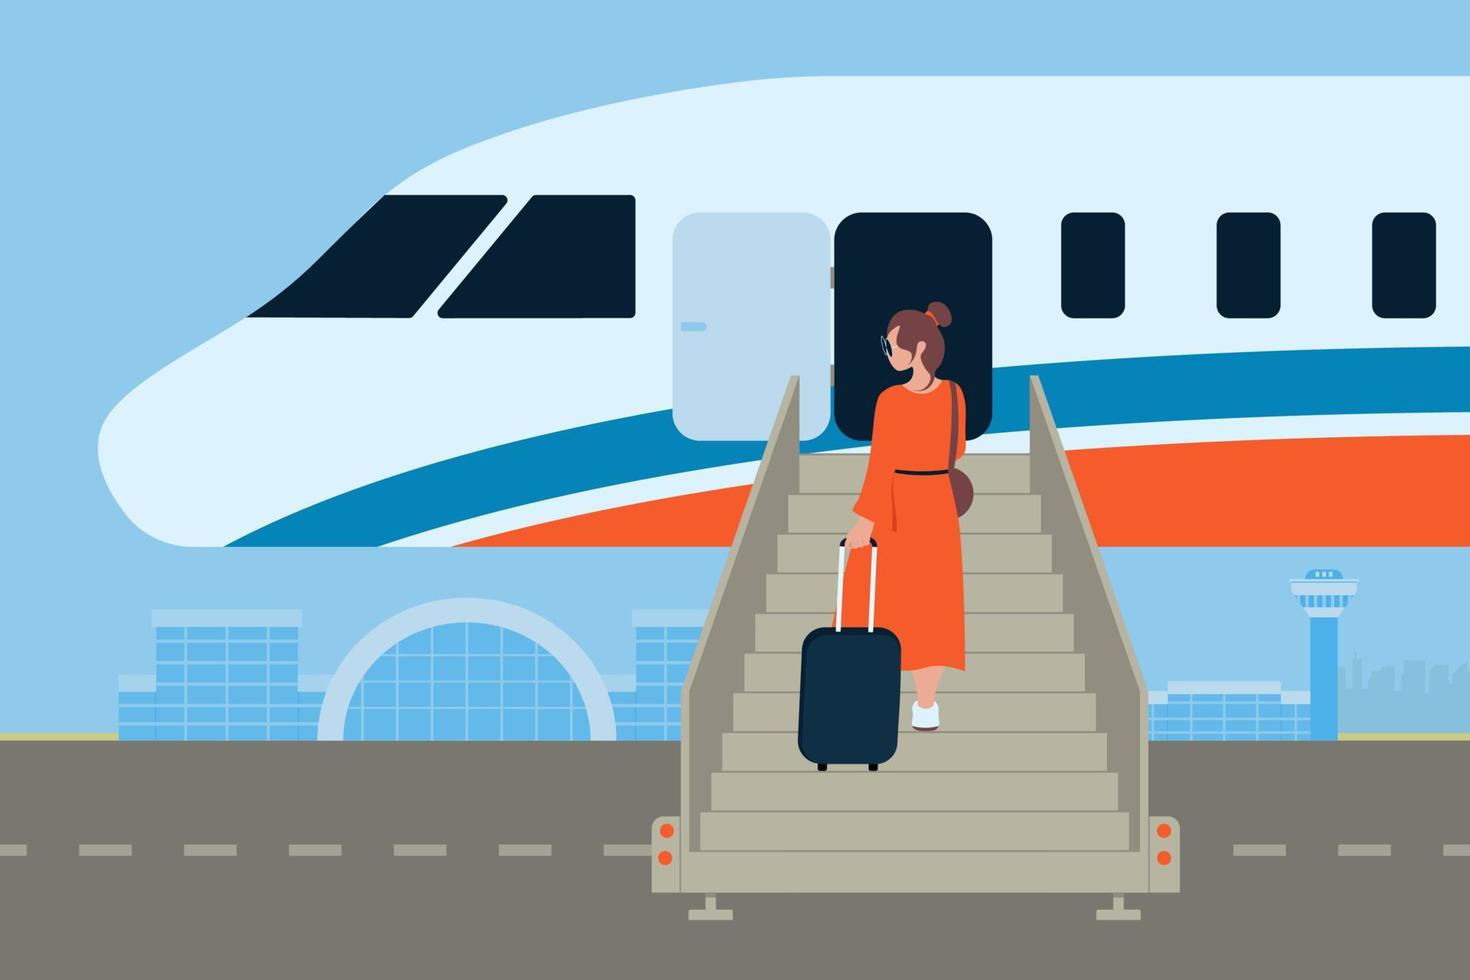 concept van instappen Bij vliegtuig met ladder op reis vector illustratie in vlak stijl